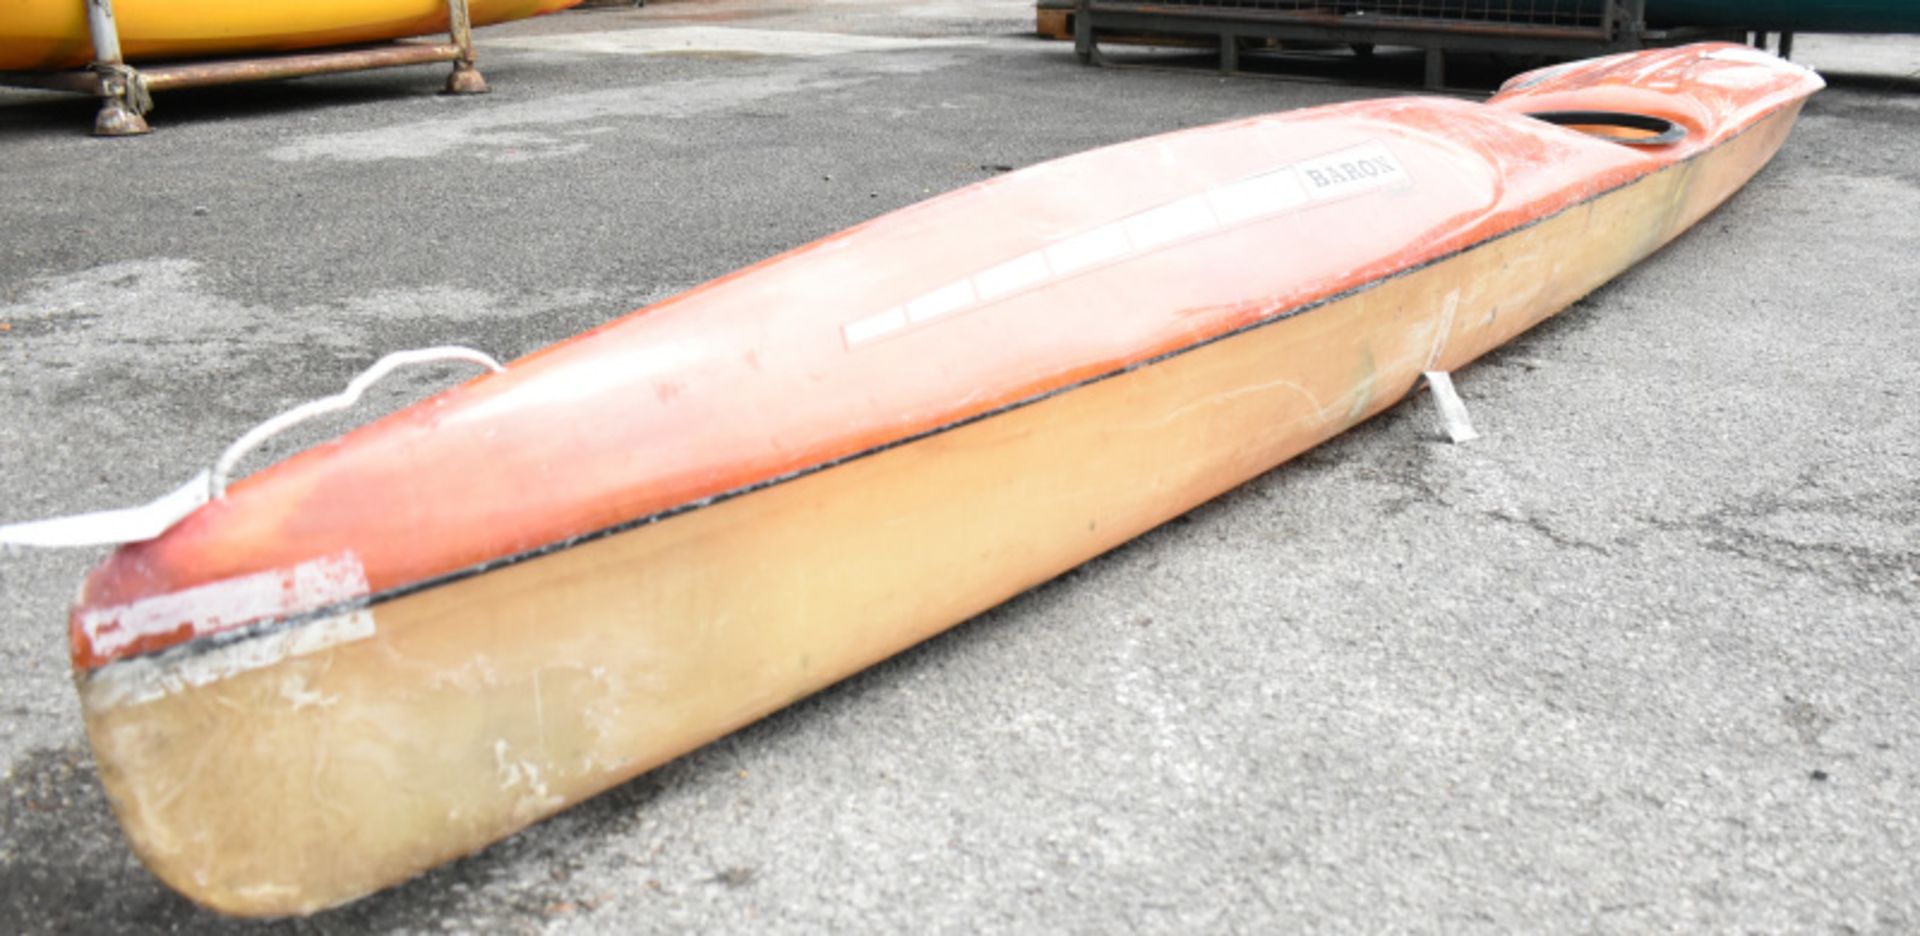 Baron Marlin Kayak - orange - no paddles - Image 3 of 13